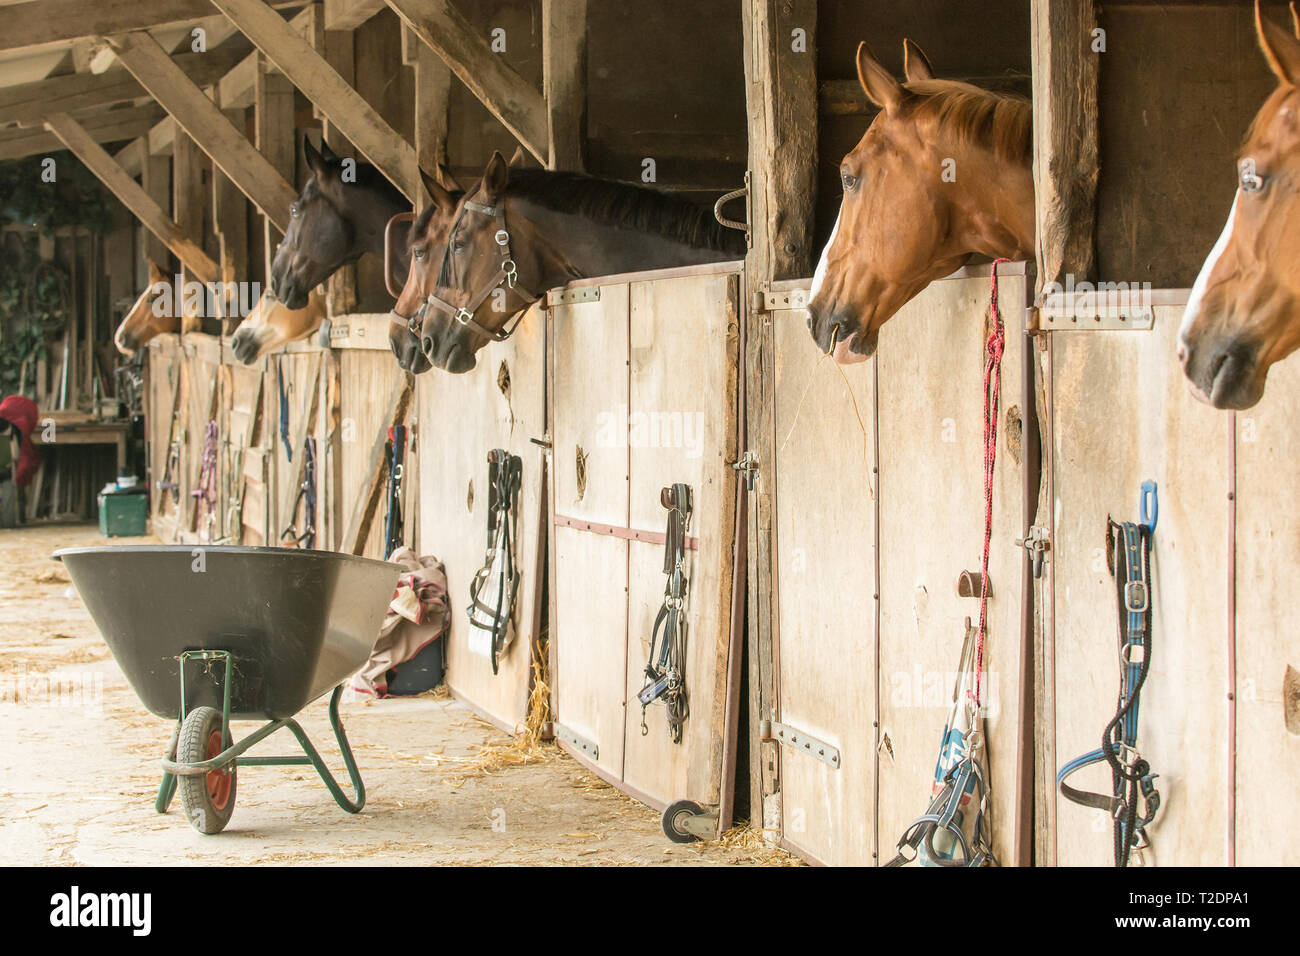 Pferde in ihren Boxen stehen auf einer Pferdefarm Blick aus dem Fenster. Viel Holz, eine Schubkarre und Stroh sind typische Details. Stockfoto